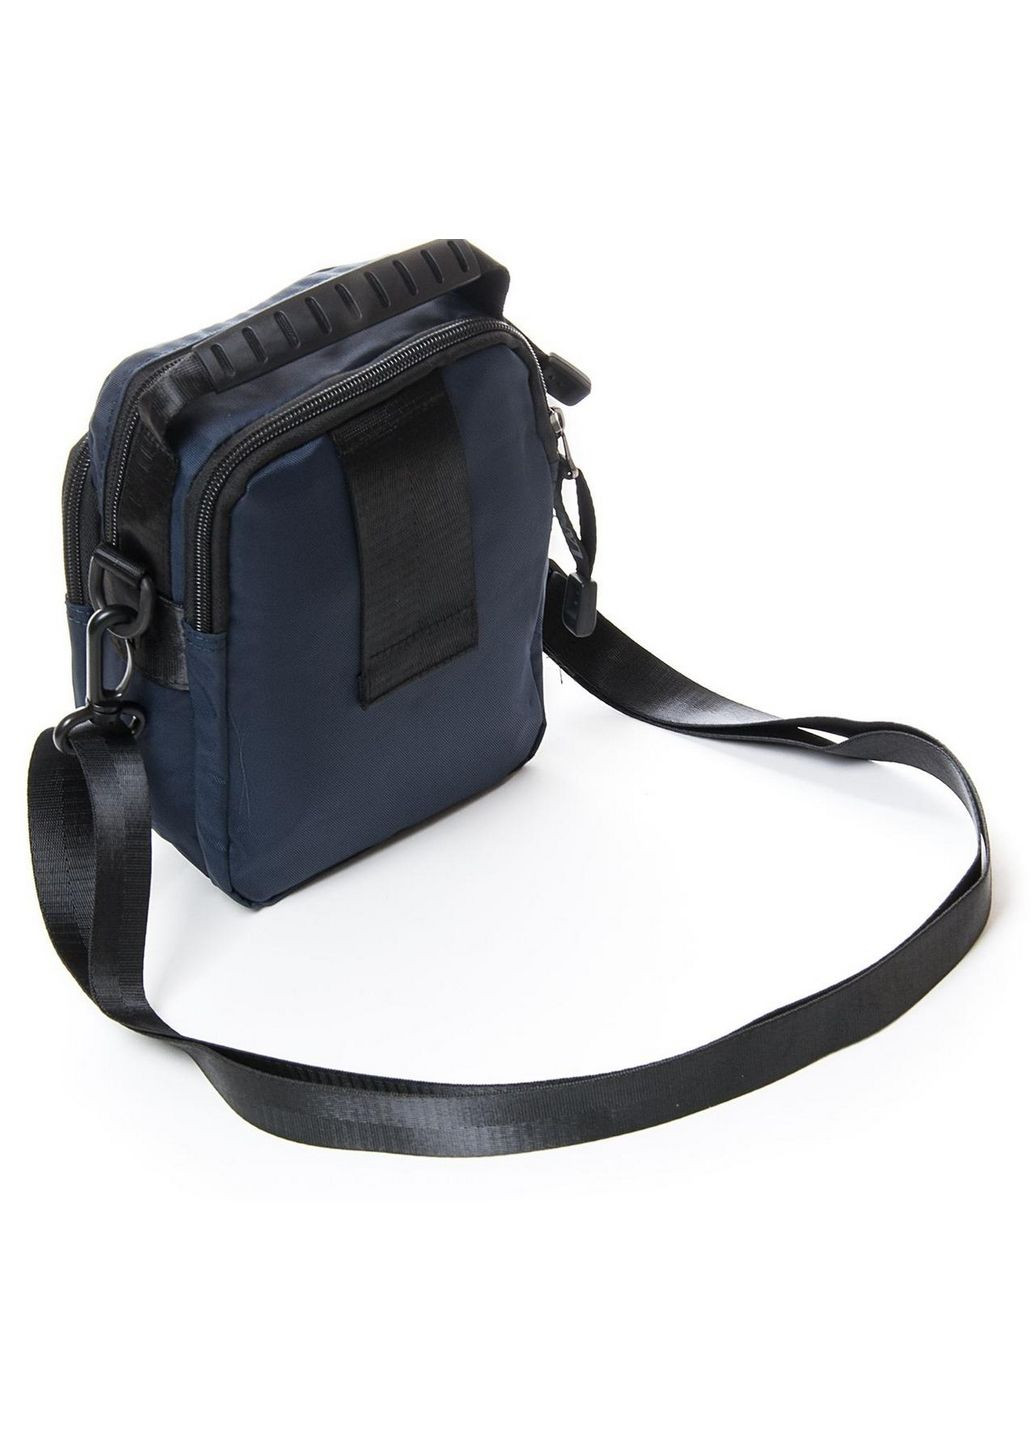 Мужская сумка планшет на плечо 15х21х8 см Lanpad (289363069)